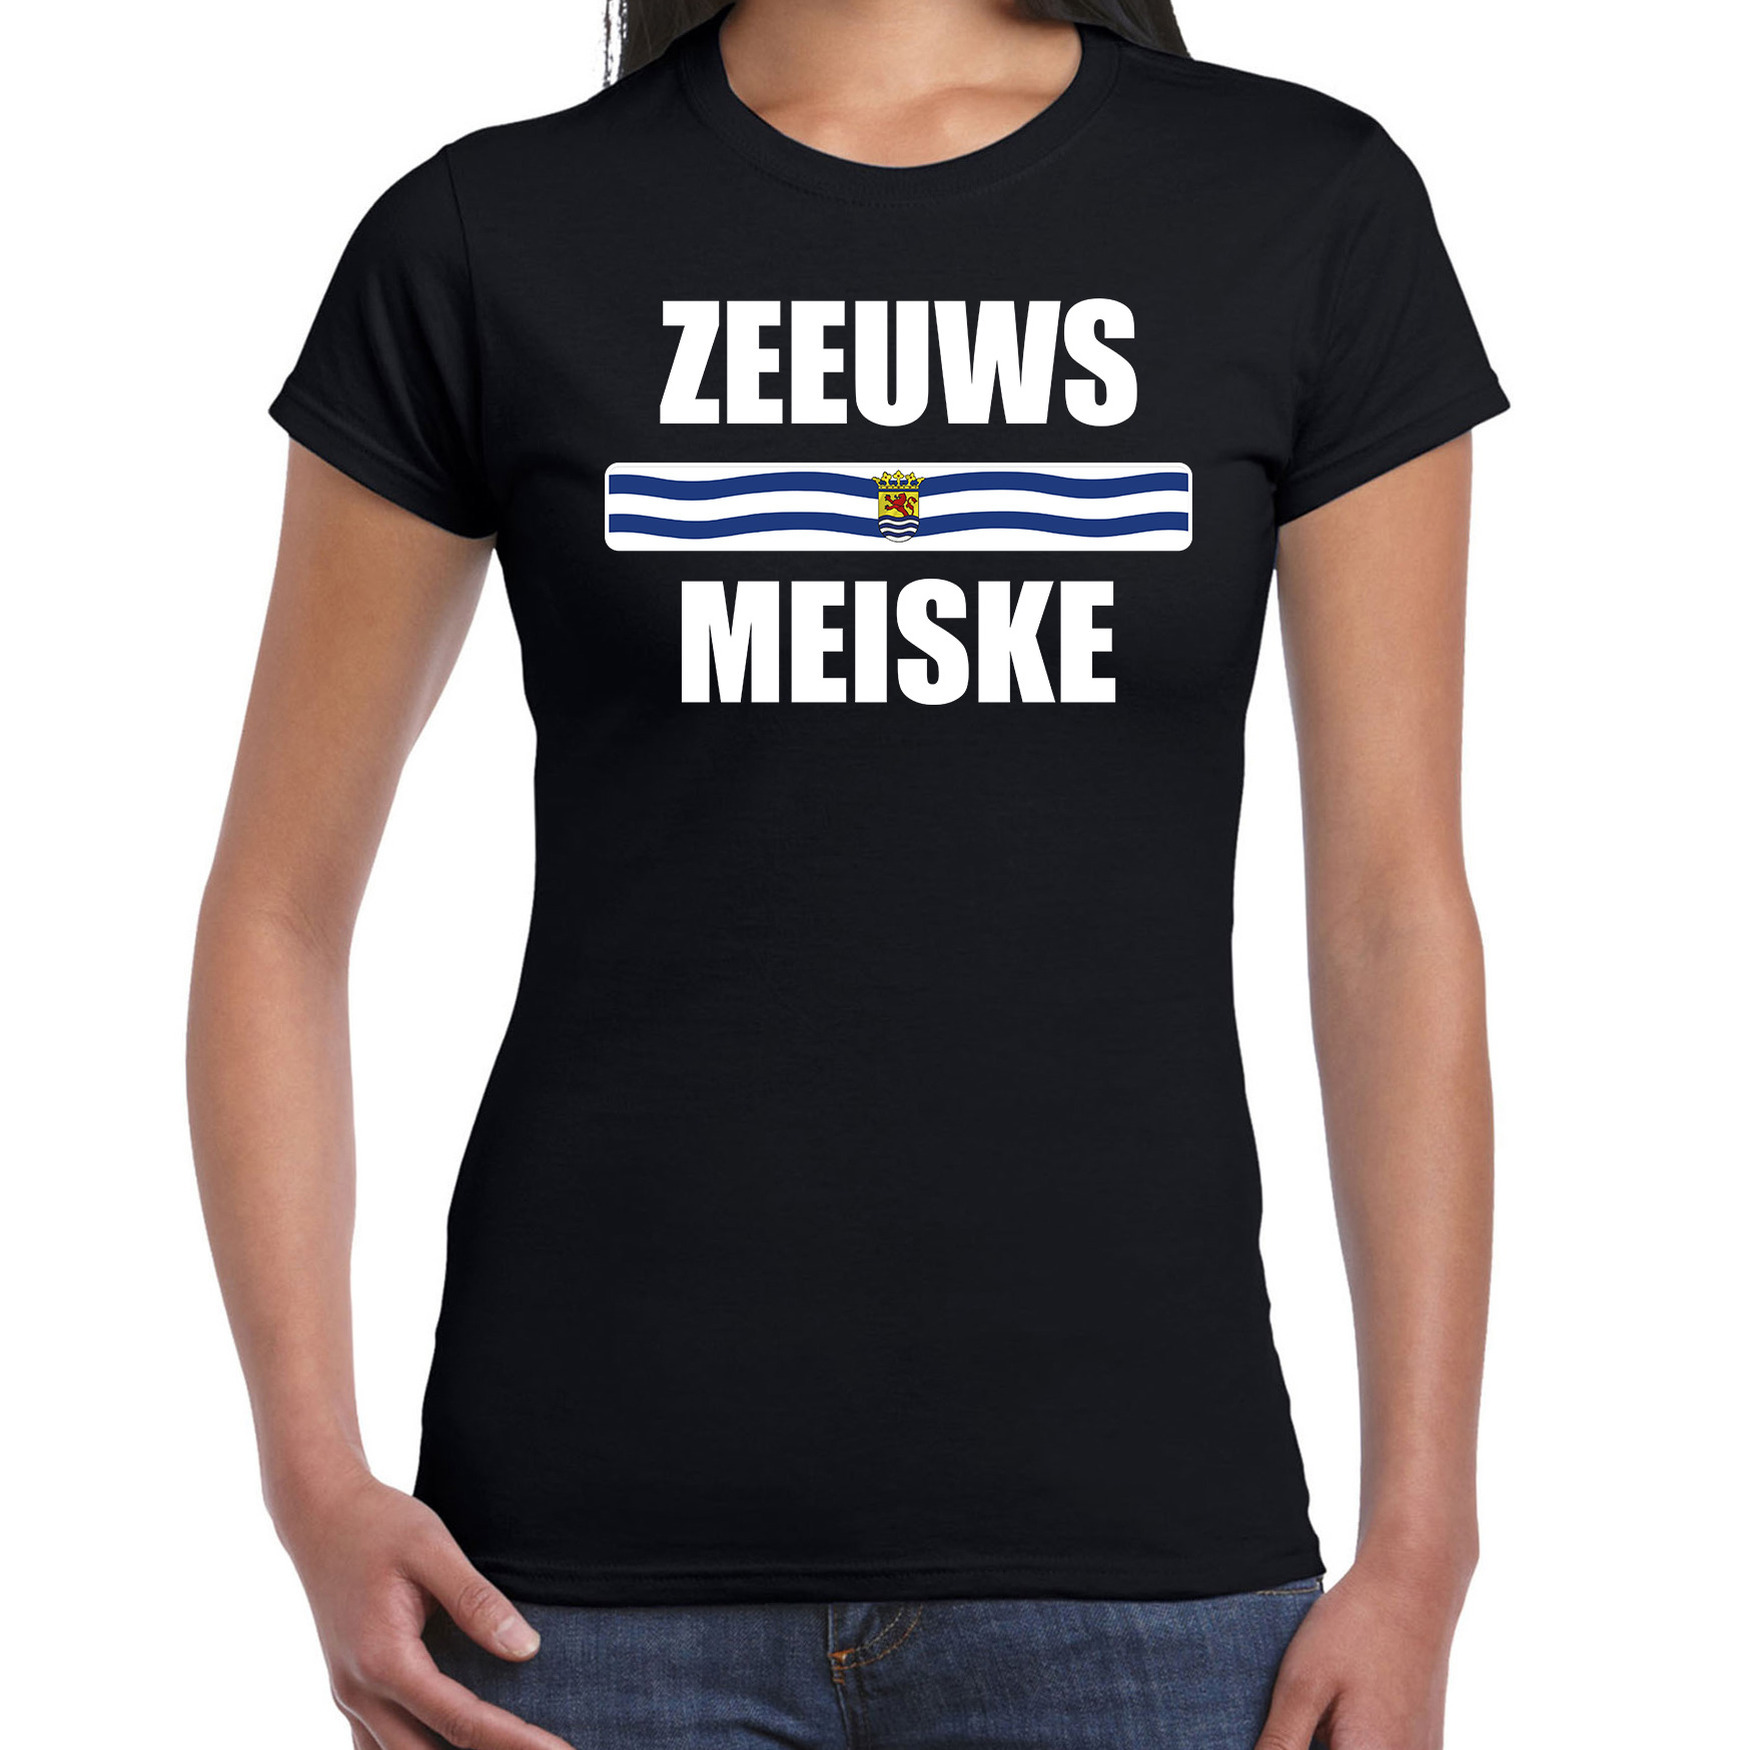 Zeeuws meiske met vlag Zeeland t-shirts Zeeuws dialect zwart voor dames